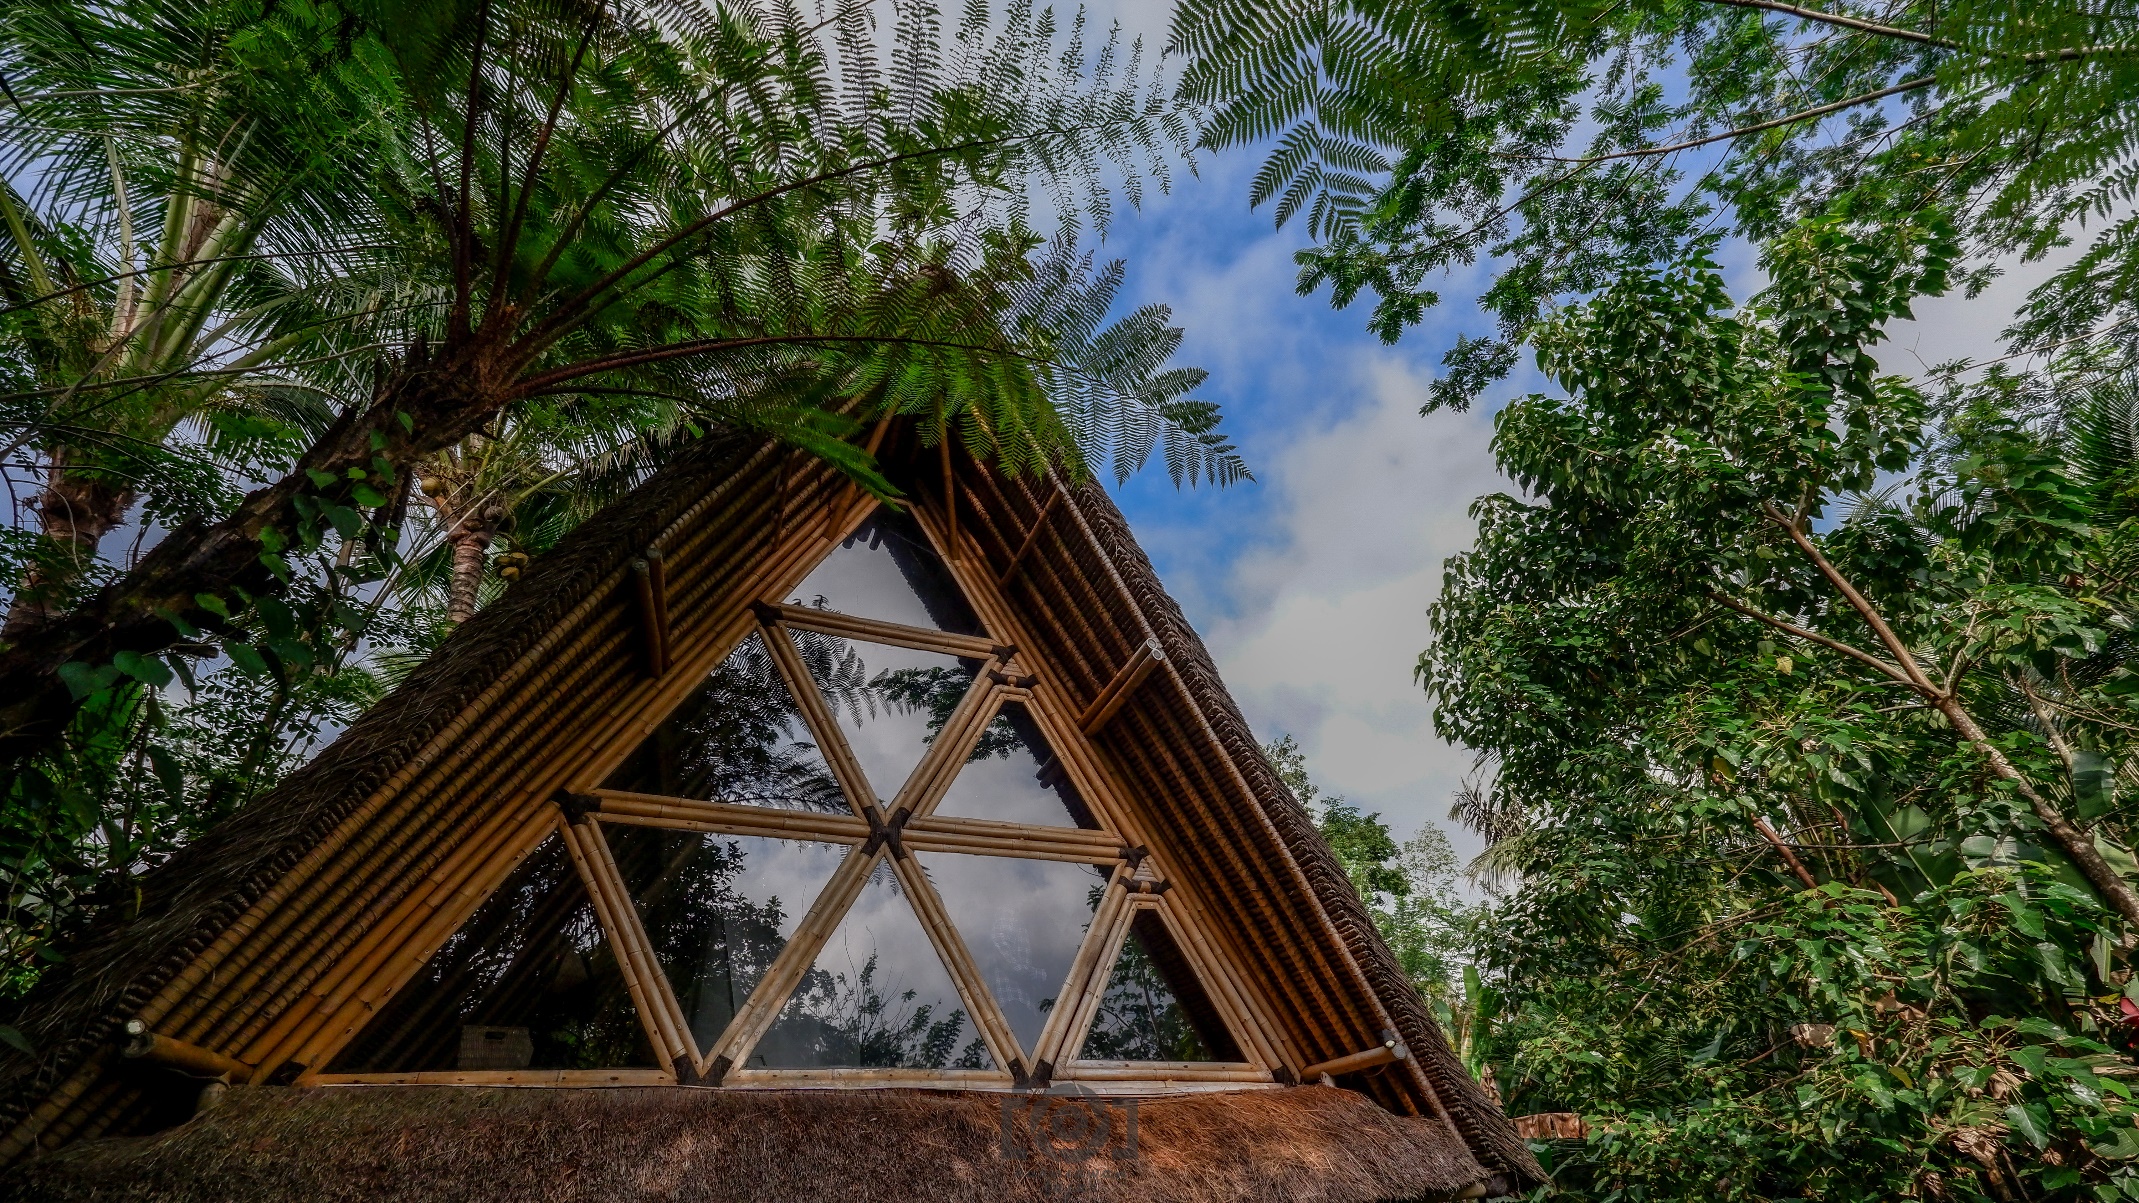 Tìm bình yên trong ngôi nhà tre ẩn mình giữa núi rừng Bali - 4